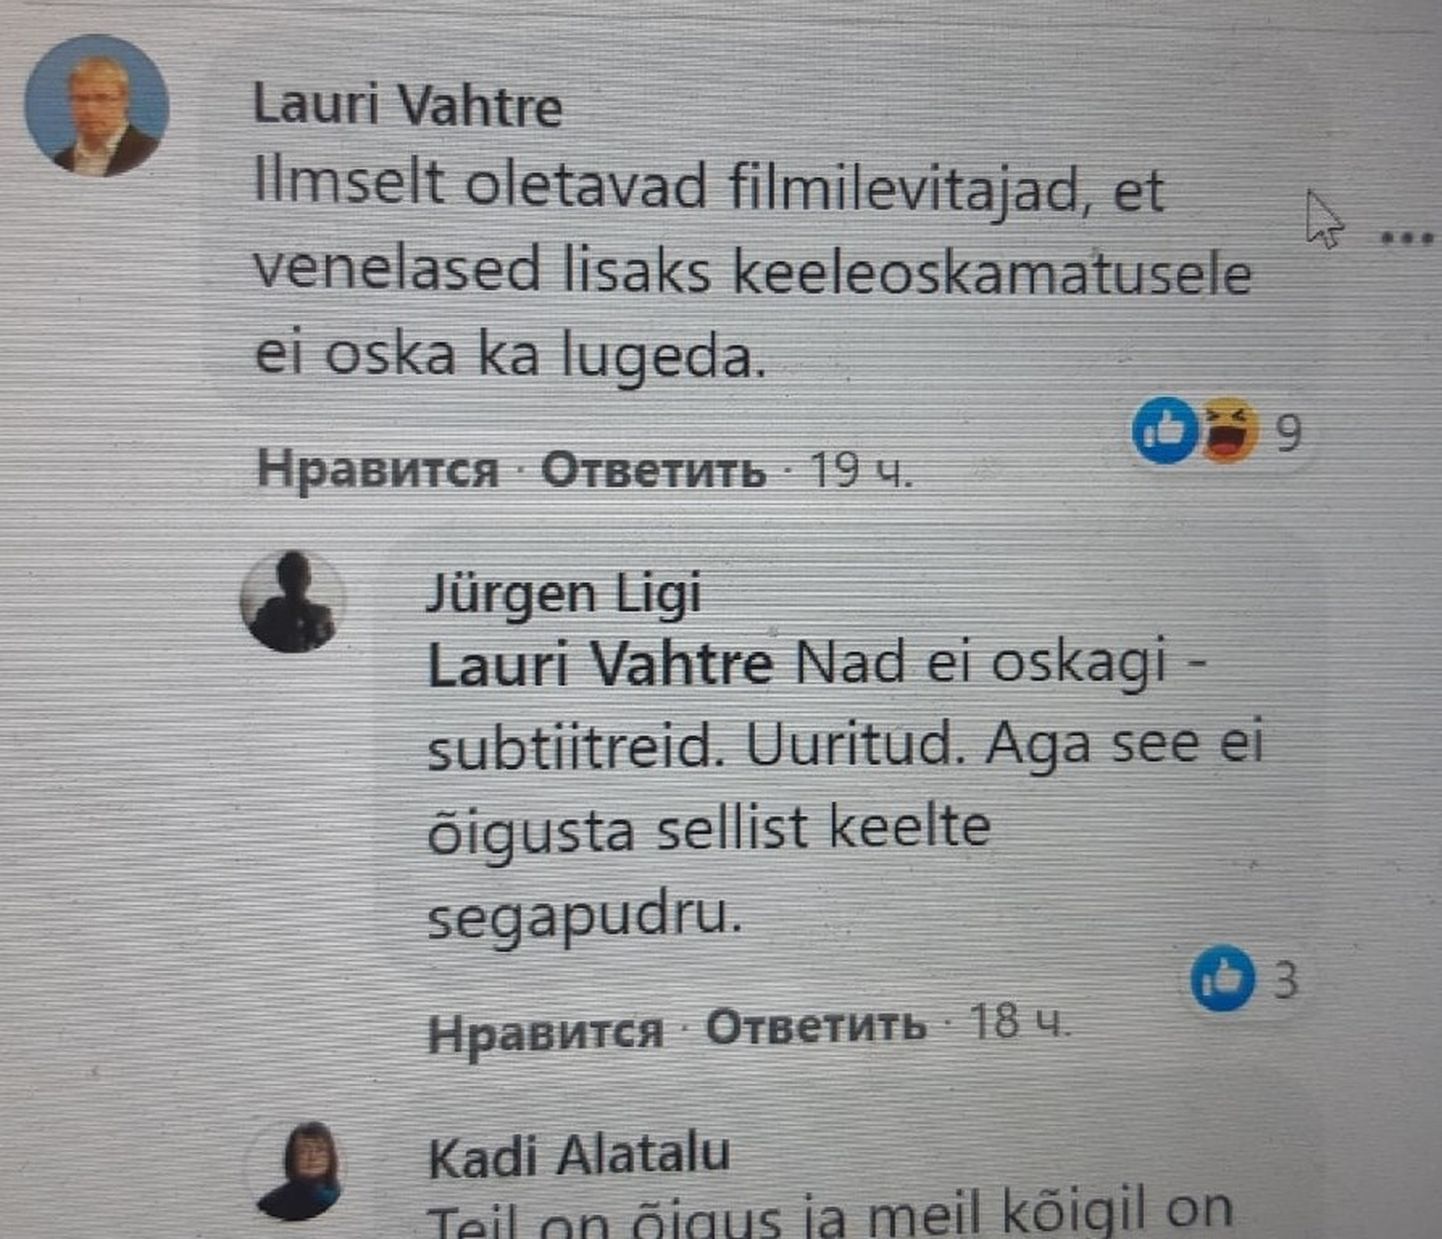 Эстонские политики интересно провели время в Фейсбуке накануне выборов.